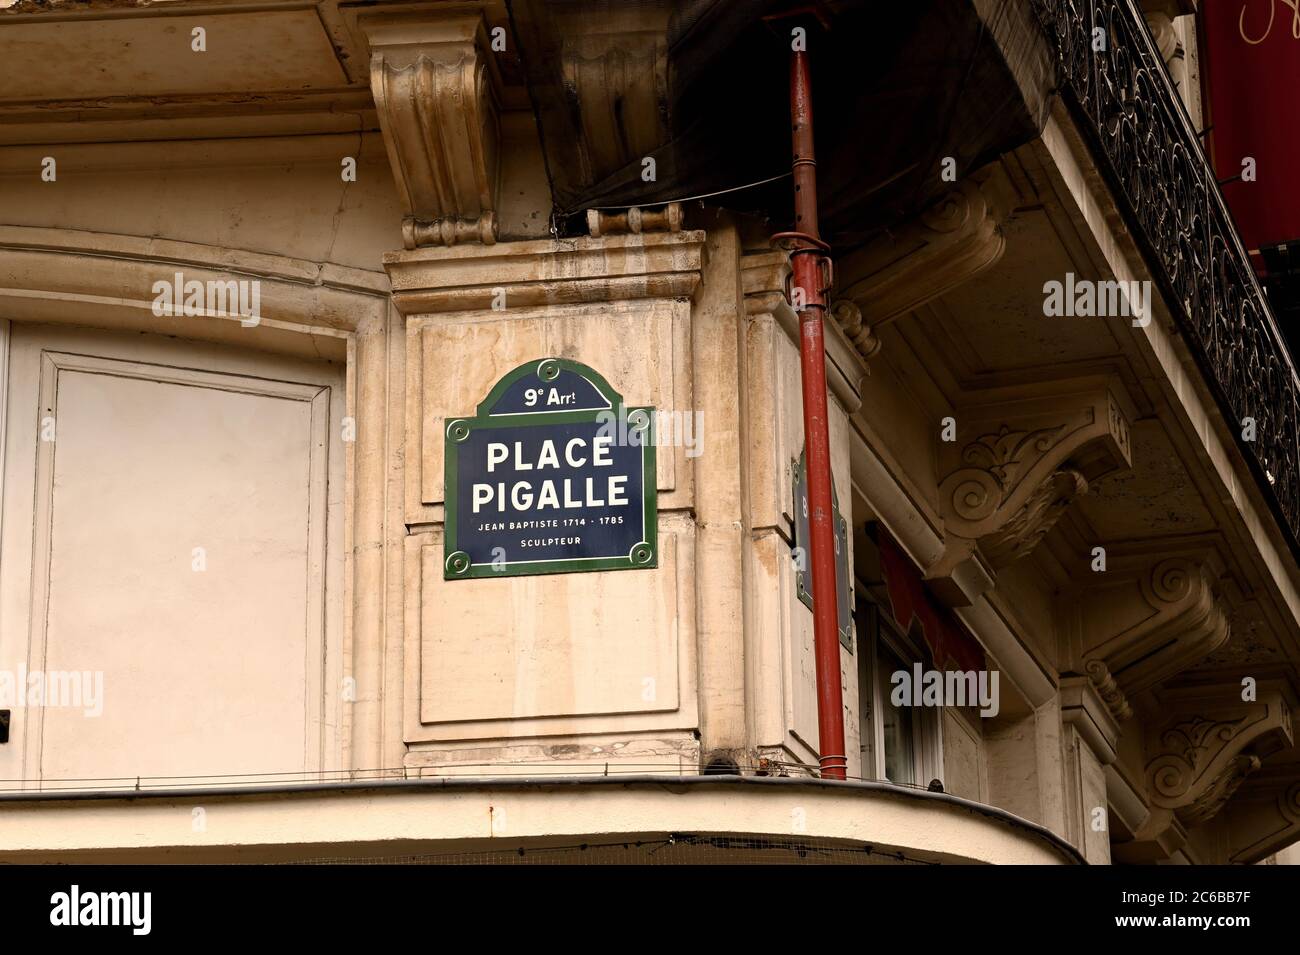 Célèbre lieu de Paris, connu pour la vie nocturne chaude Banque D'Images